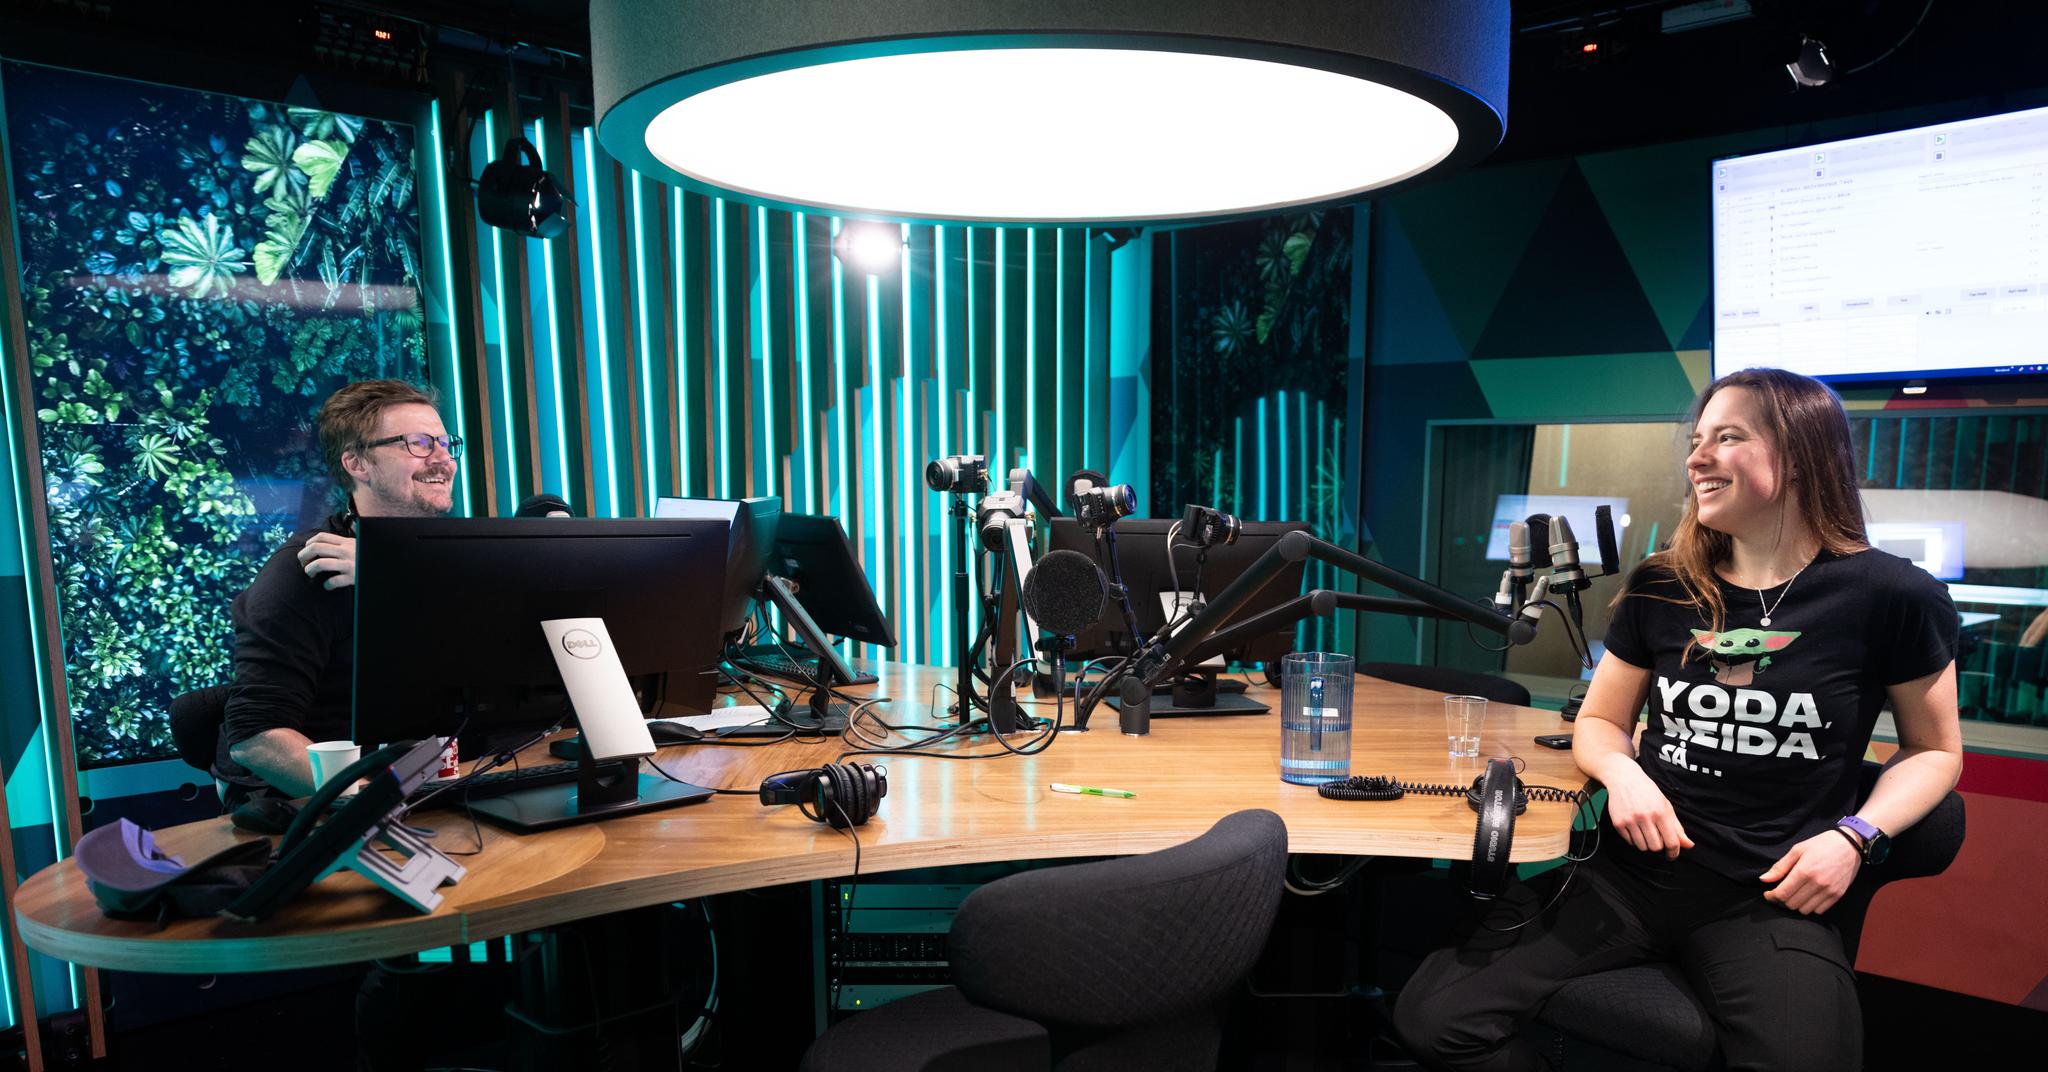 Strümke i studioet til podkasten «Drivkraft» – ett av tre ulike NRK-programmer hun deltok i den dagen.